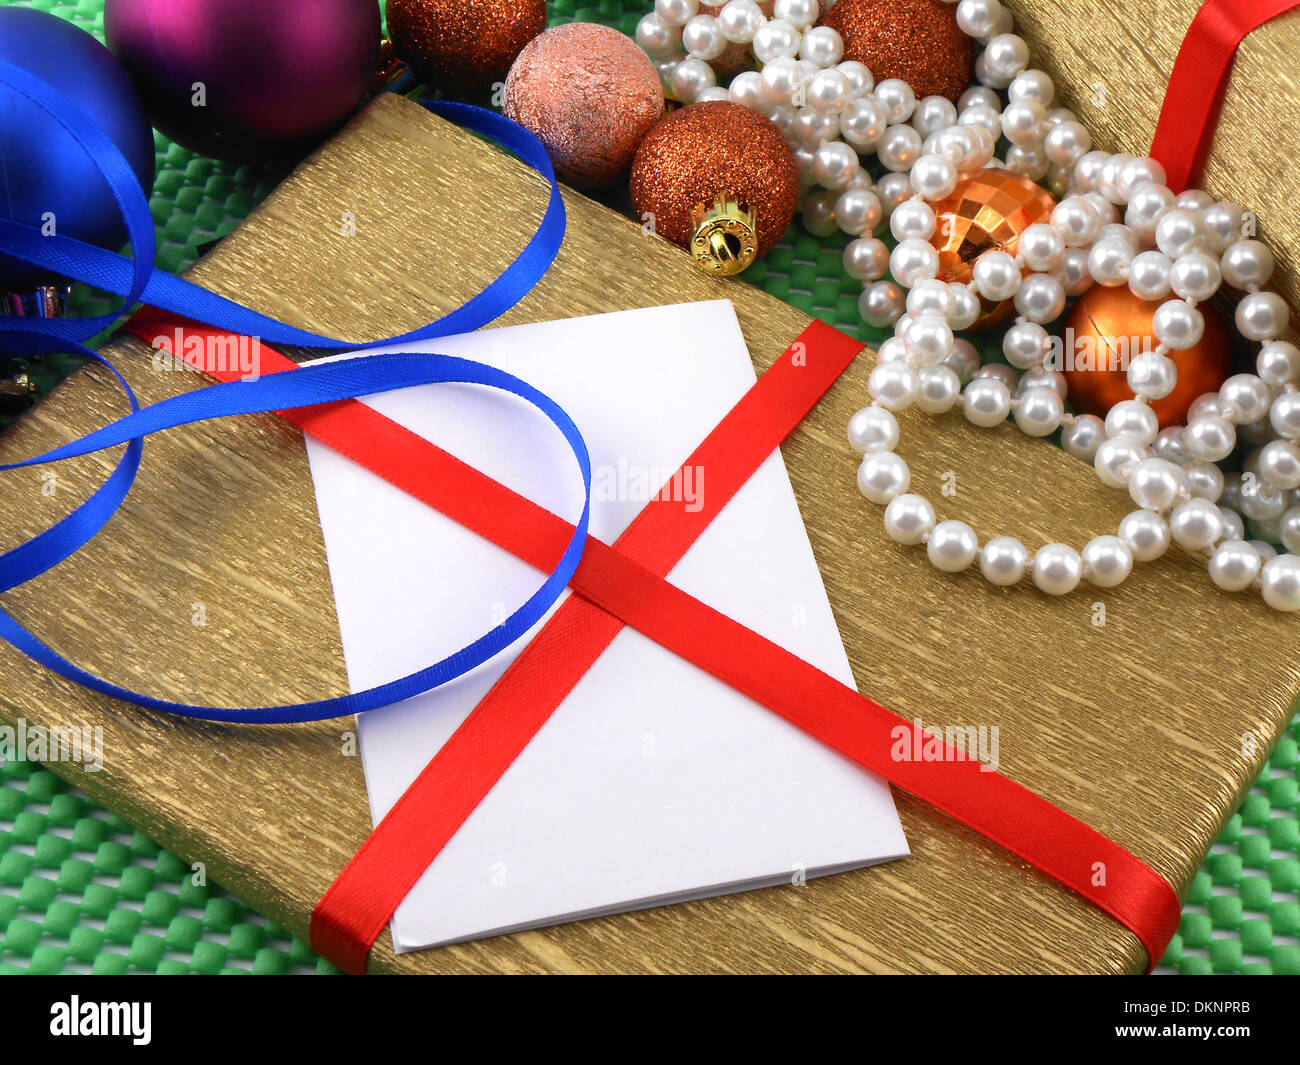 Weihnachten und Silvester Dekoration, Christbaumkugeln und Geschenke Stockfoto